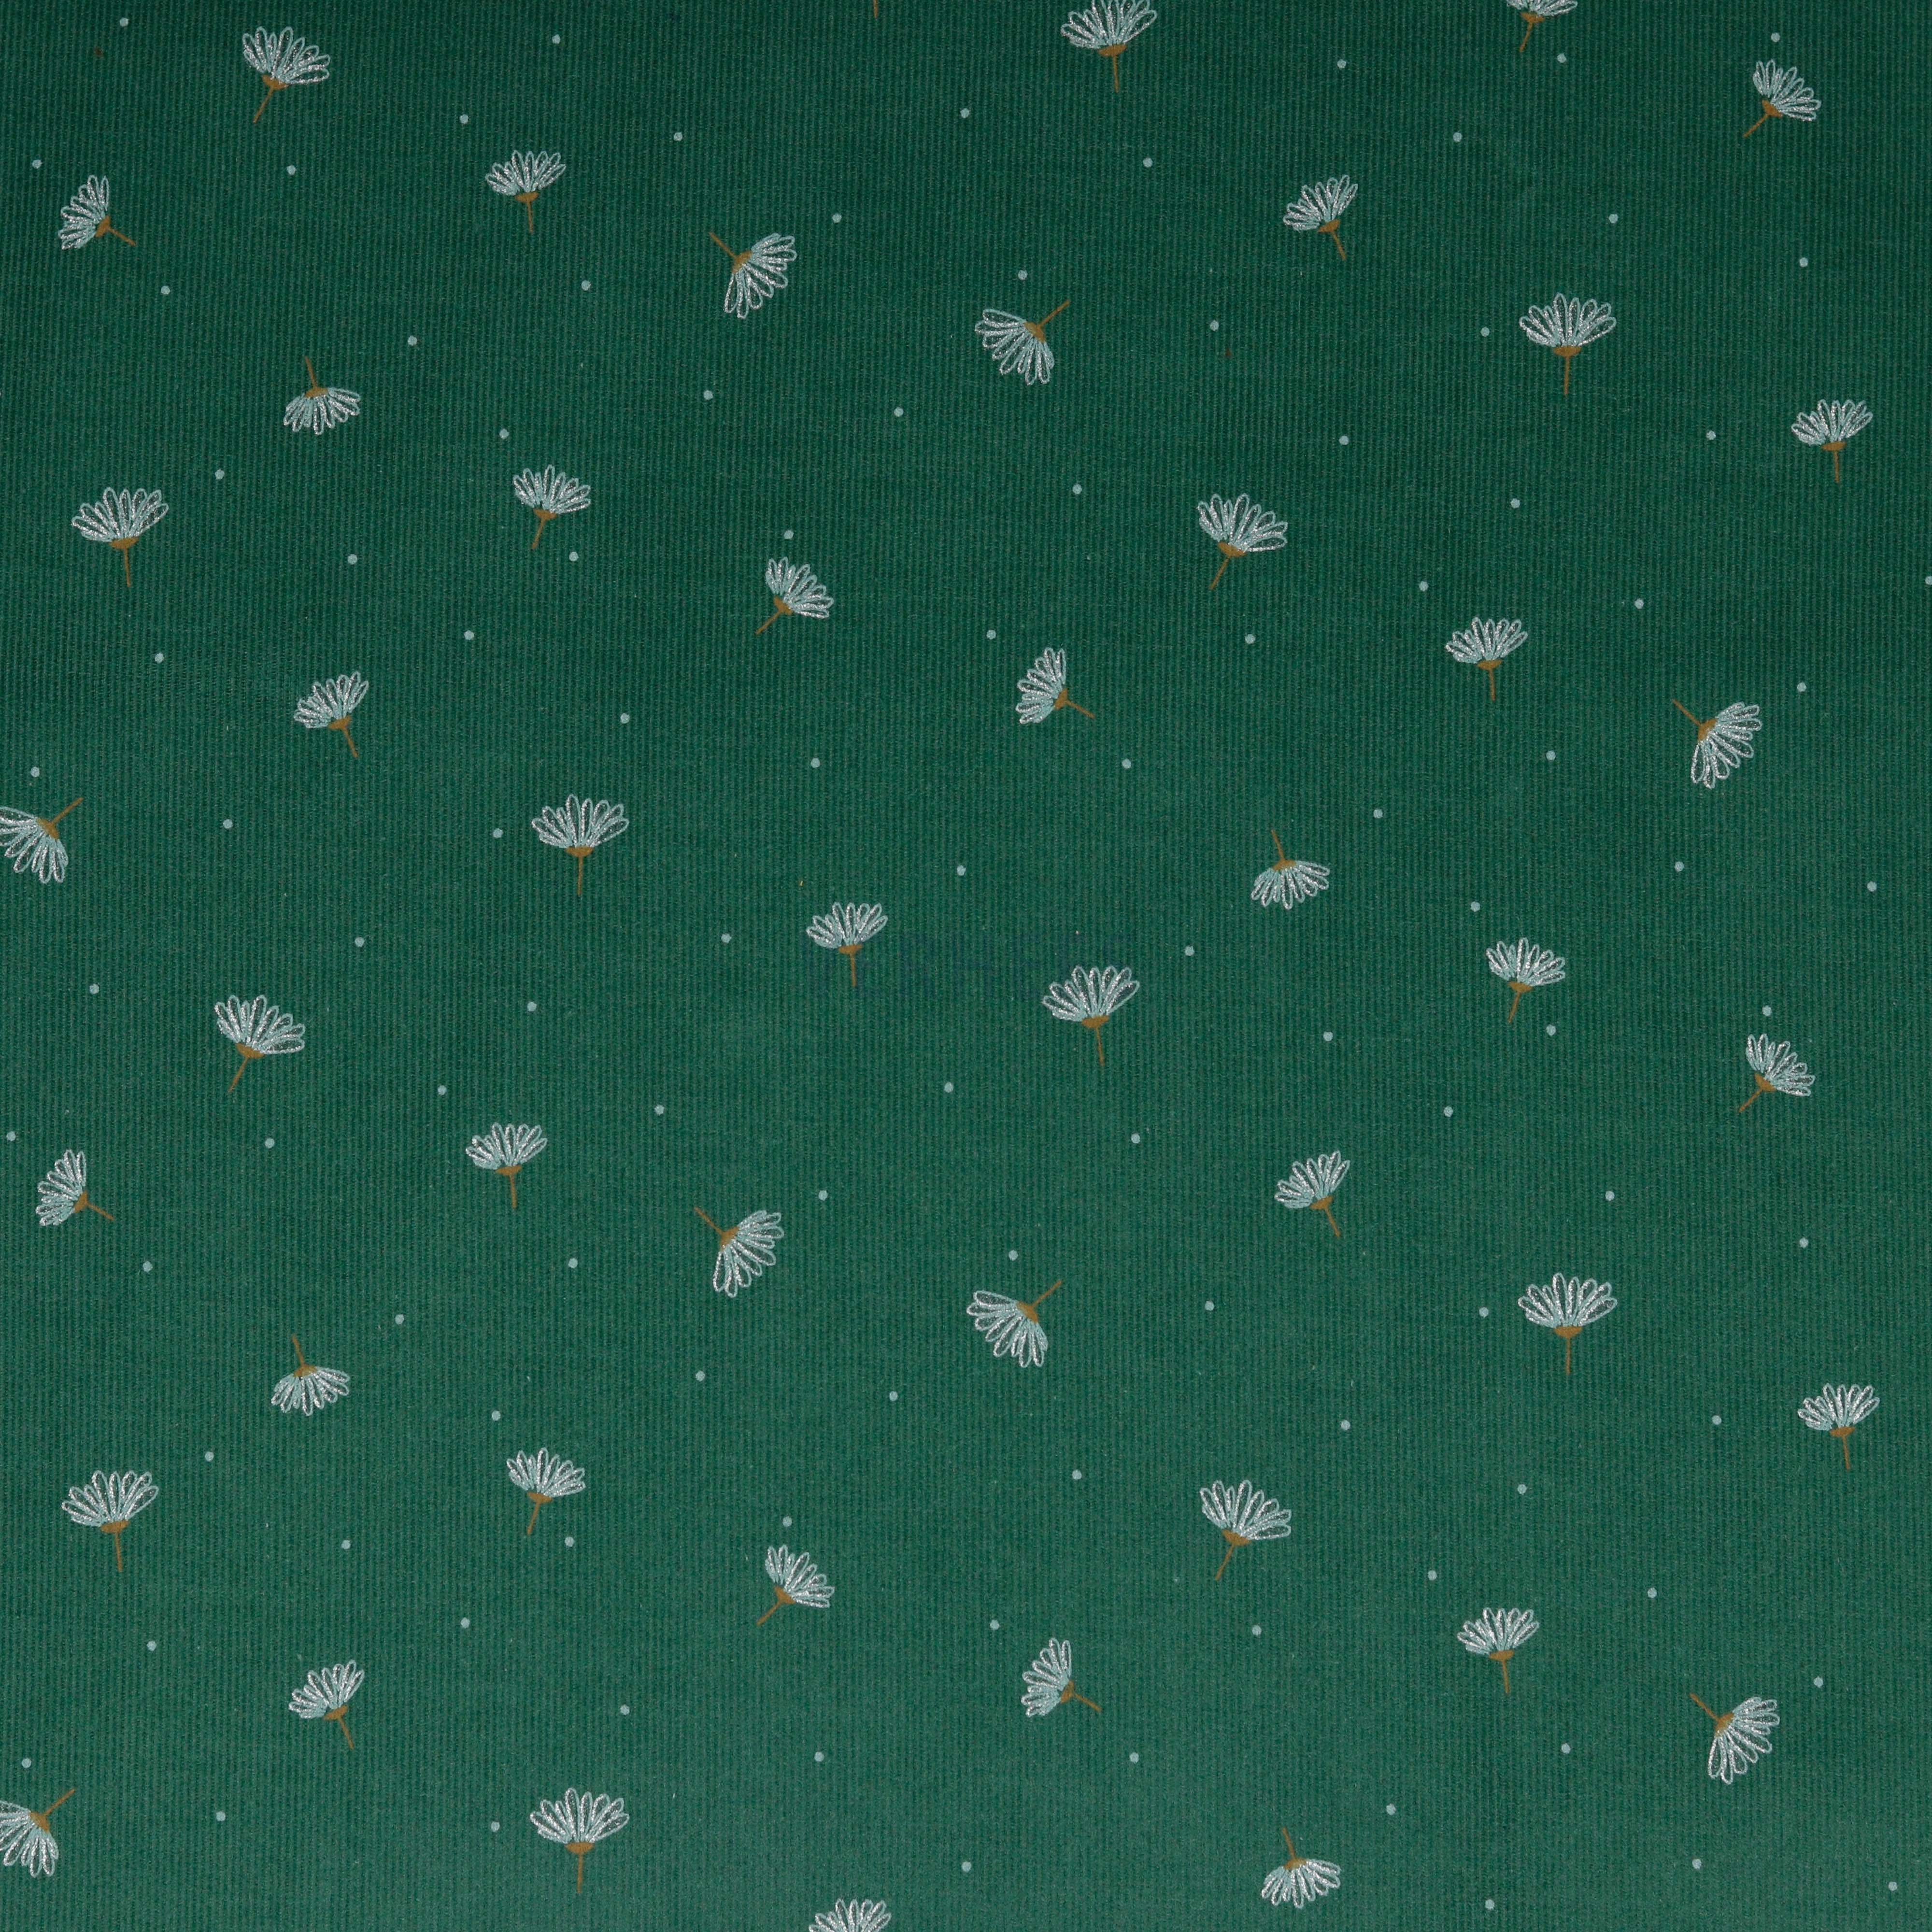 BABYCORD GLITTER FLOWER DARK GREEN (high resolution)